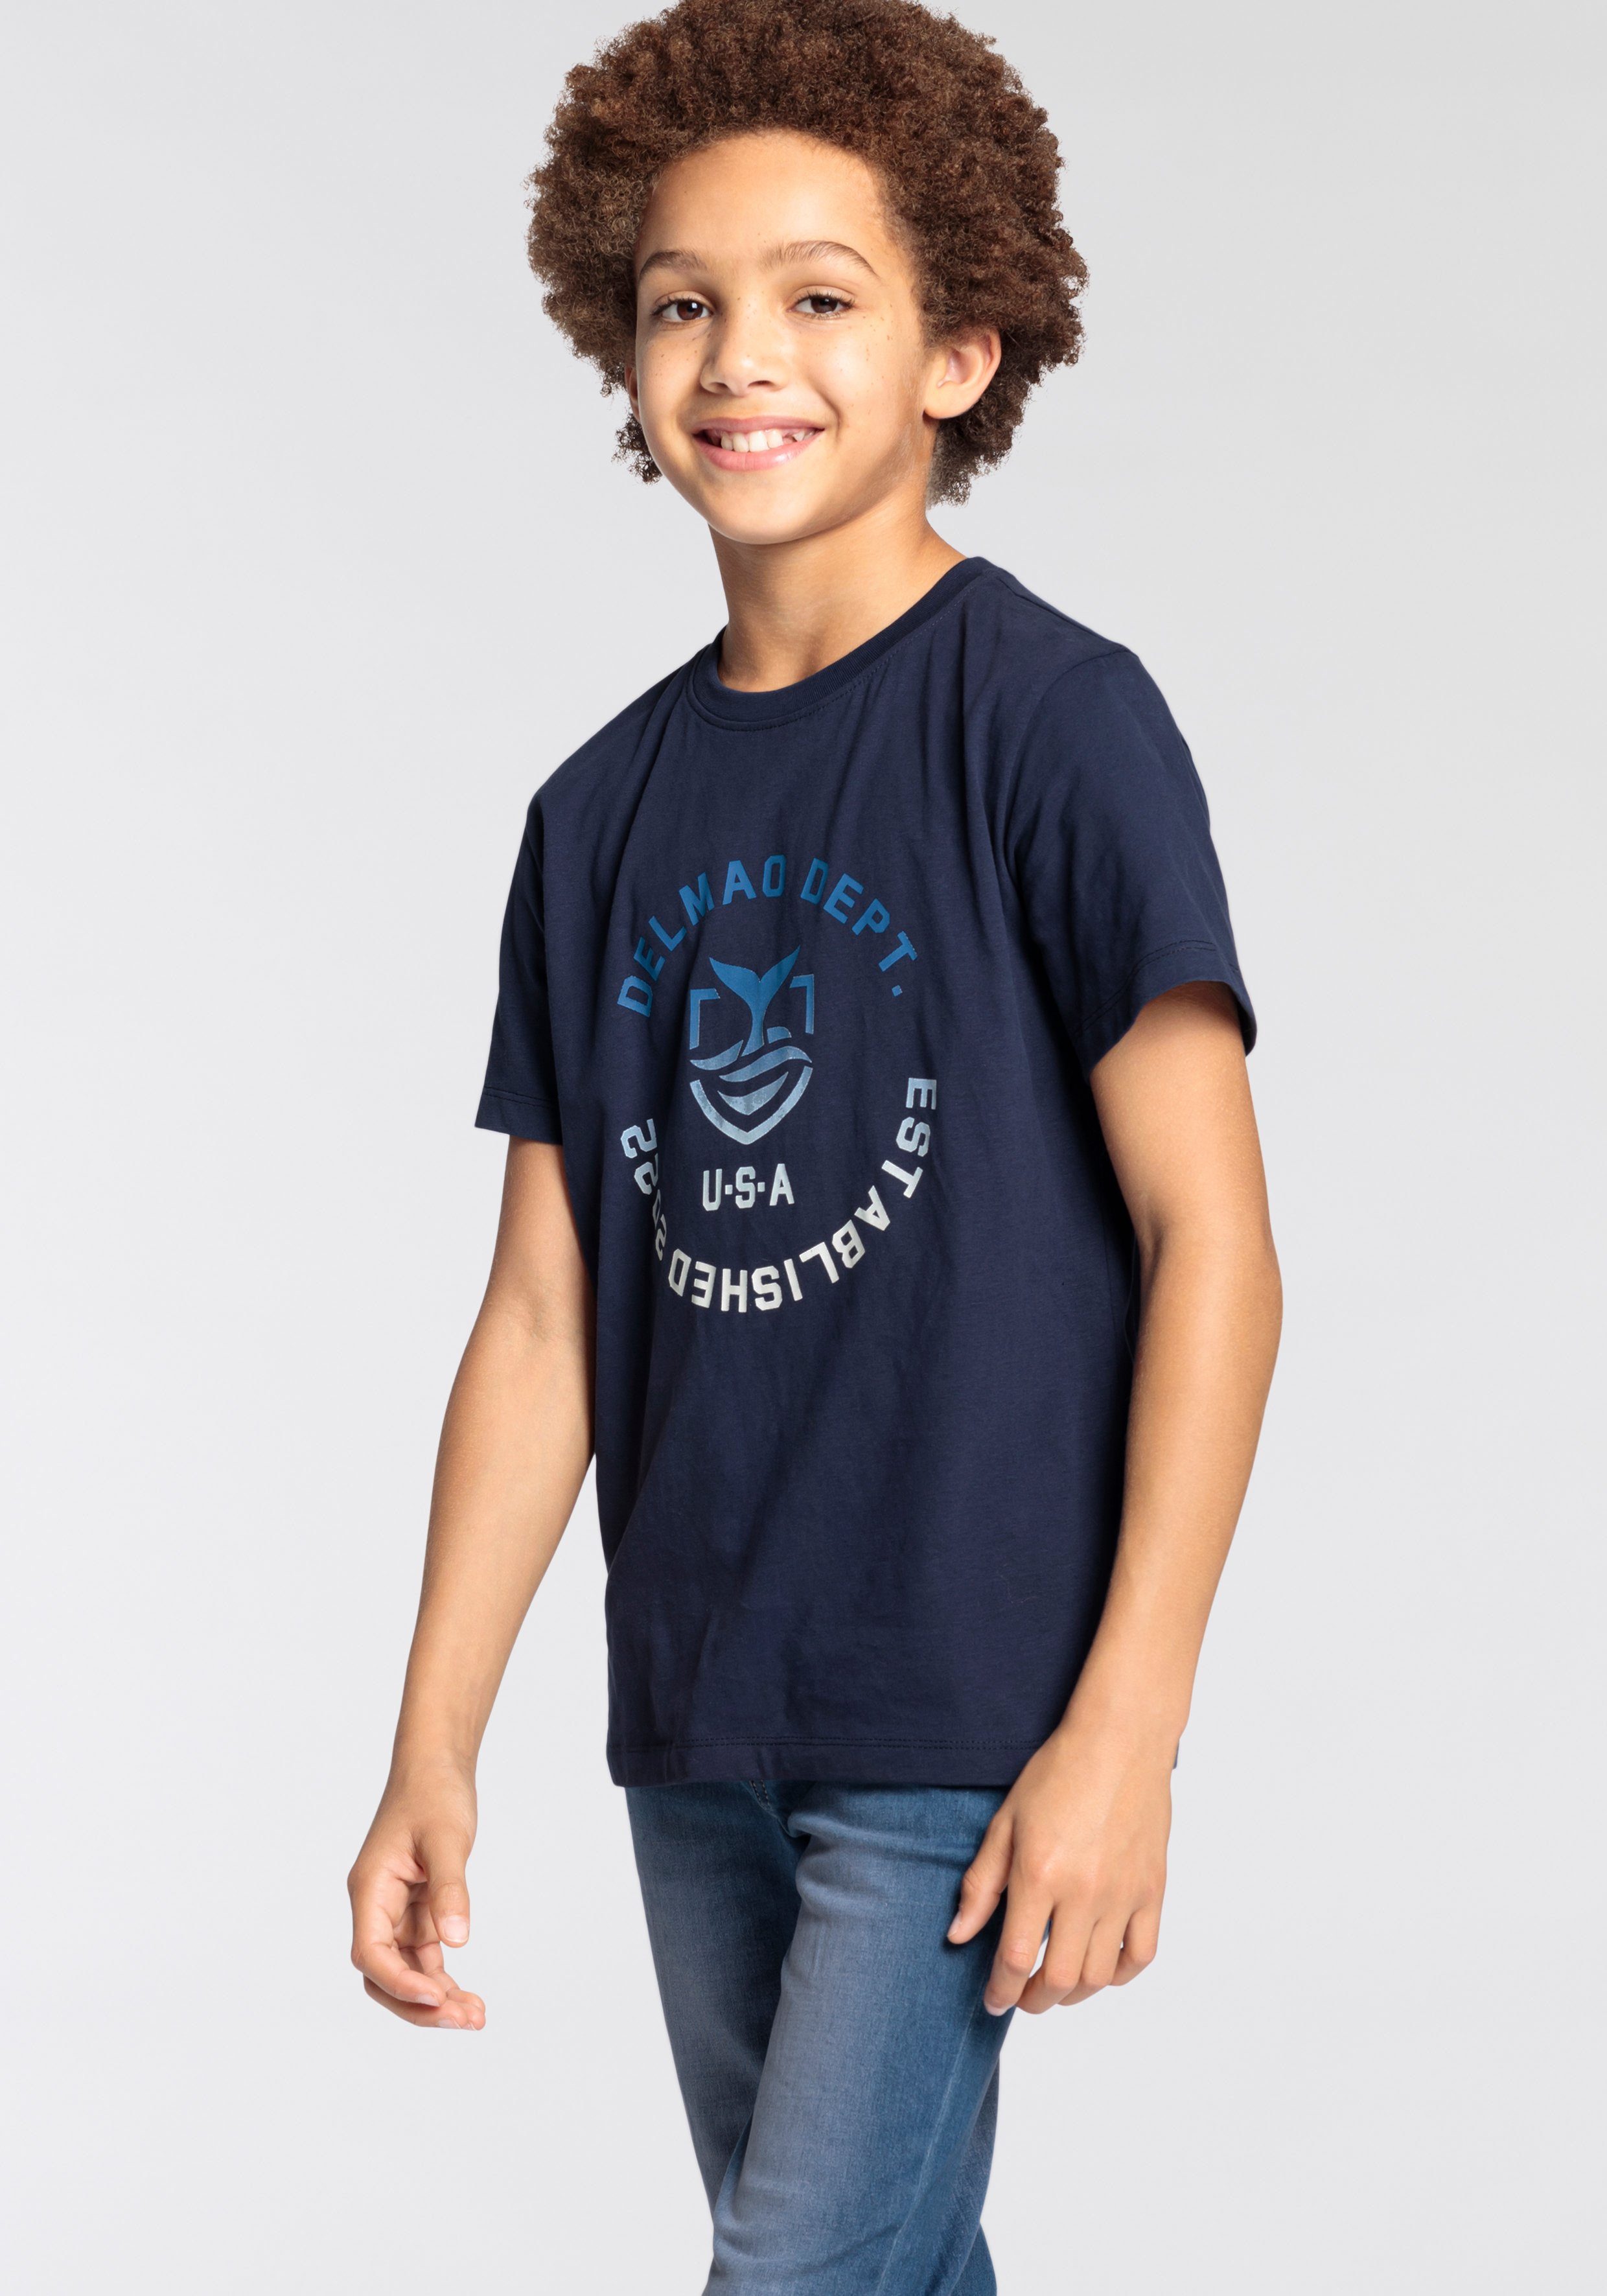 DELMAO T-Shirt für Jungen, mit Logodruck Logo-Print. MARKE, NEUE großem Mit vorn